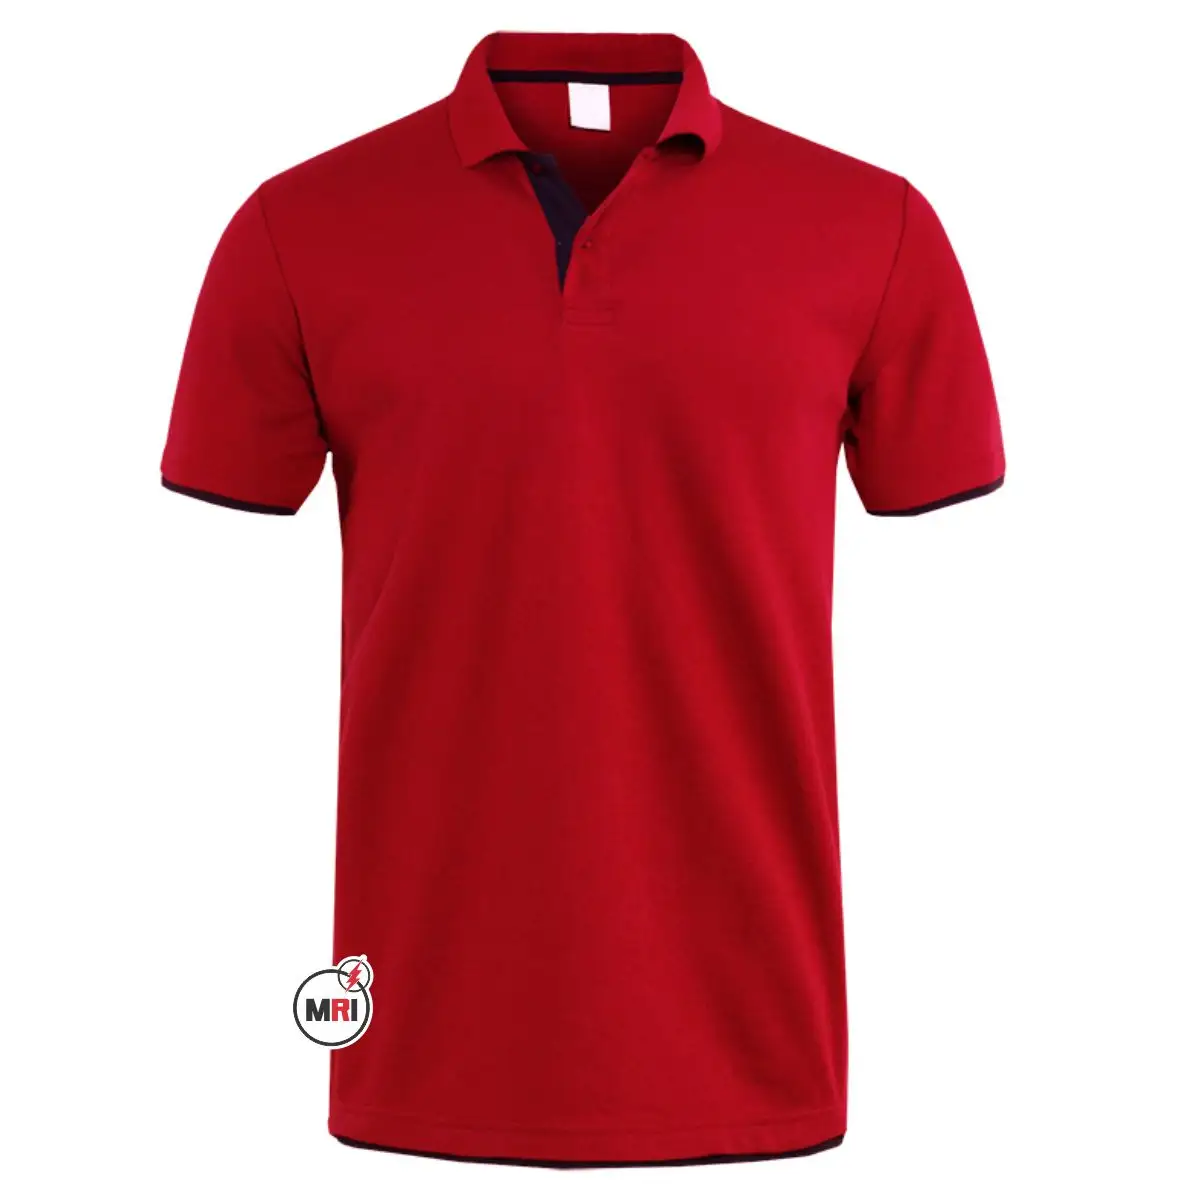 Atacado OEM em branco T-shirt impressão personalizada design do logotipo 100% algodão simples homens polo de golfe t camisas Brand New Custom Logo Alta